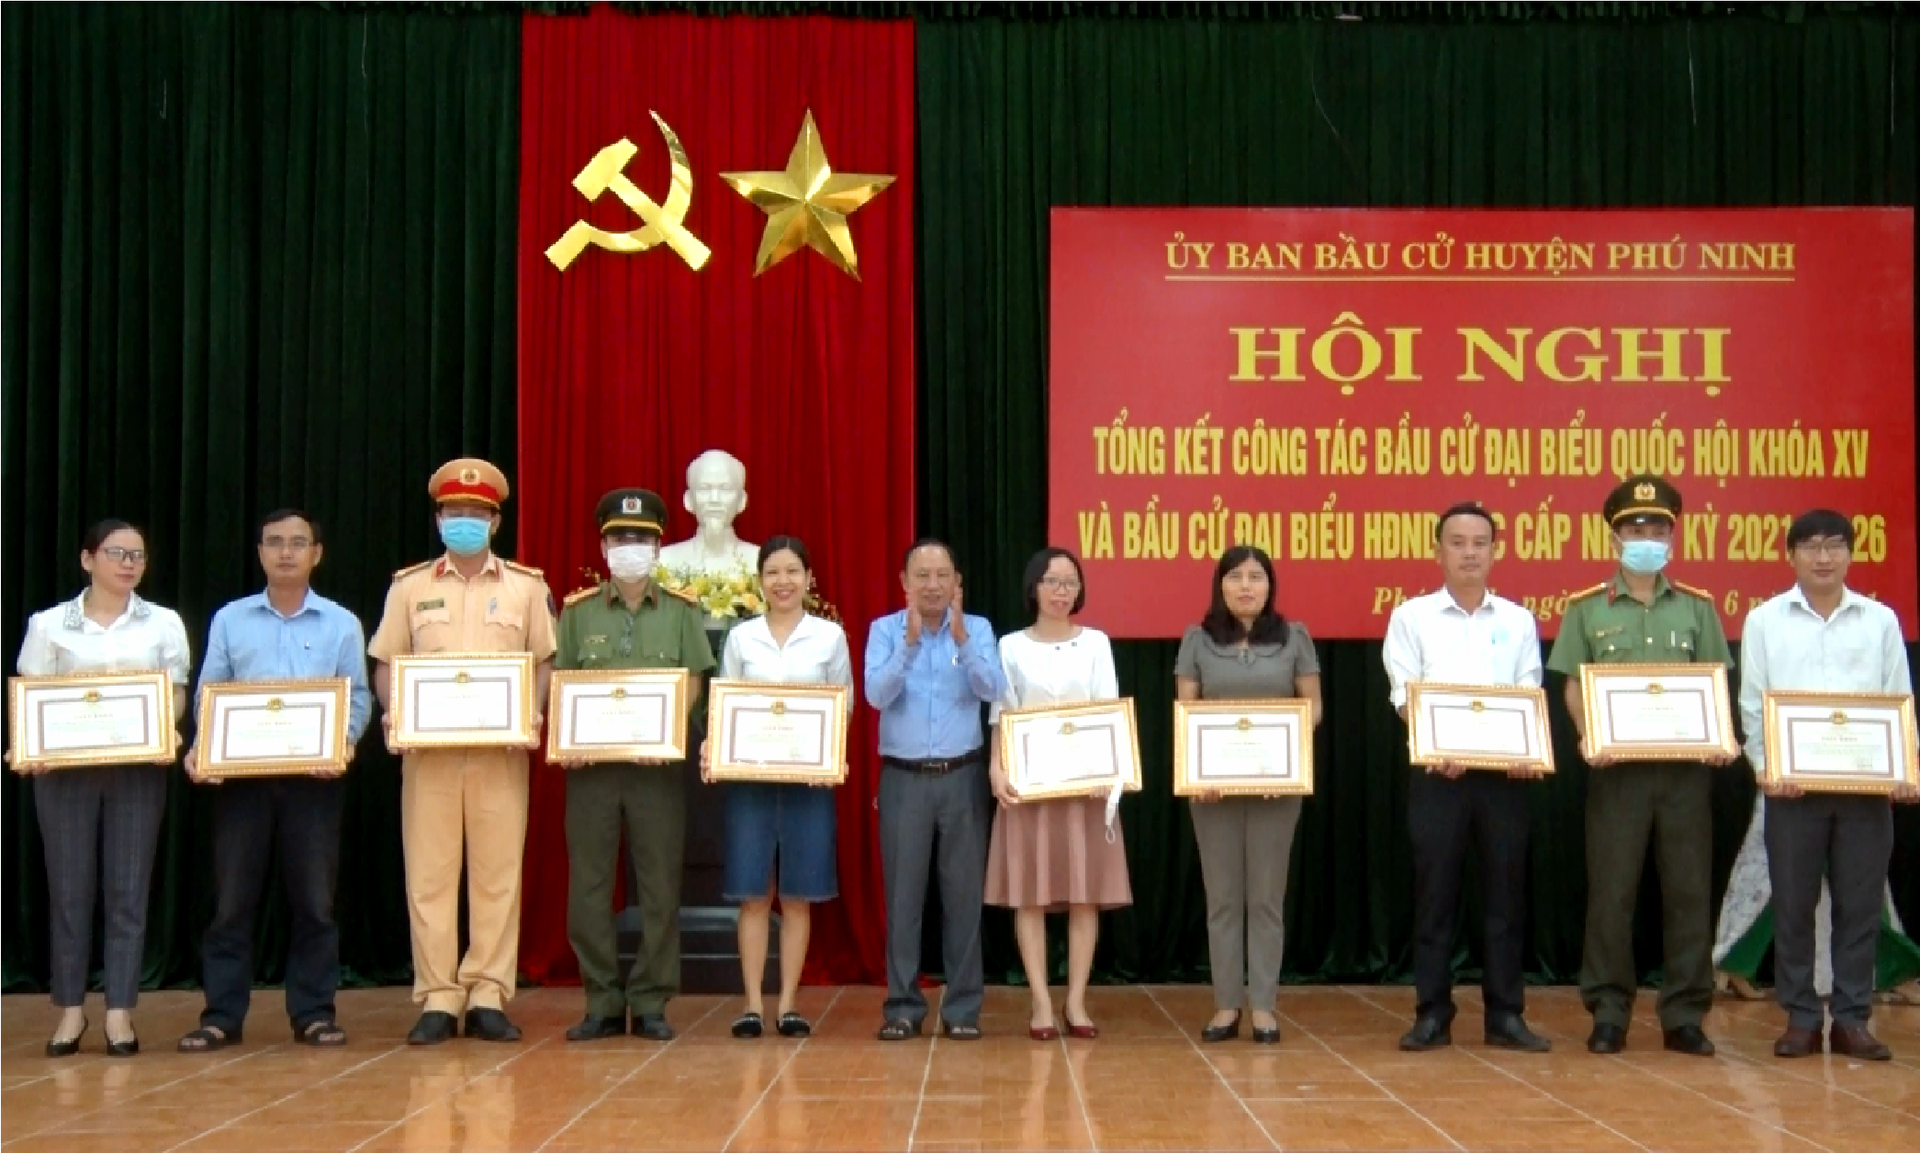 Bí thư Huyện ủy Phú Ninh Vũ Văn Thẩm trao giấy khen cho các cá nhân, tập thể hoàn thành xuất sắc trong công tác bầu cử. Ảnh: Q.VƯƠNG